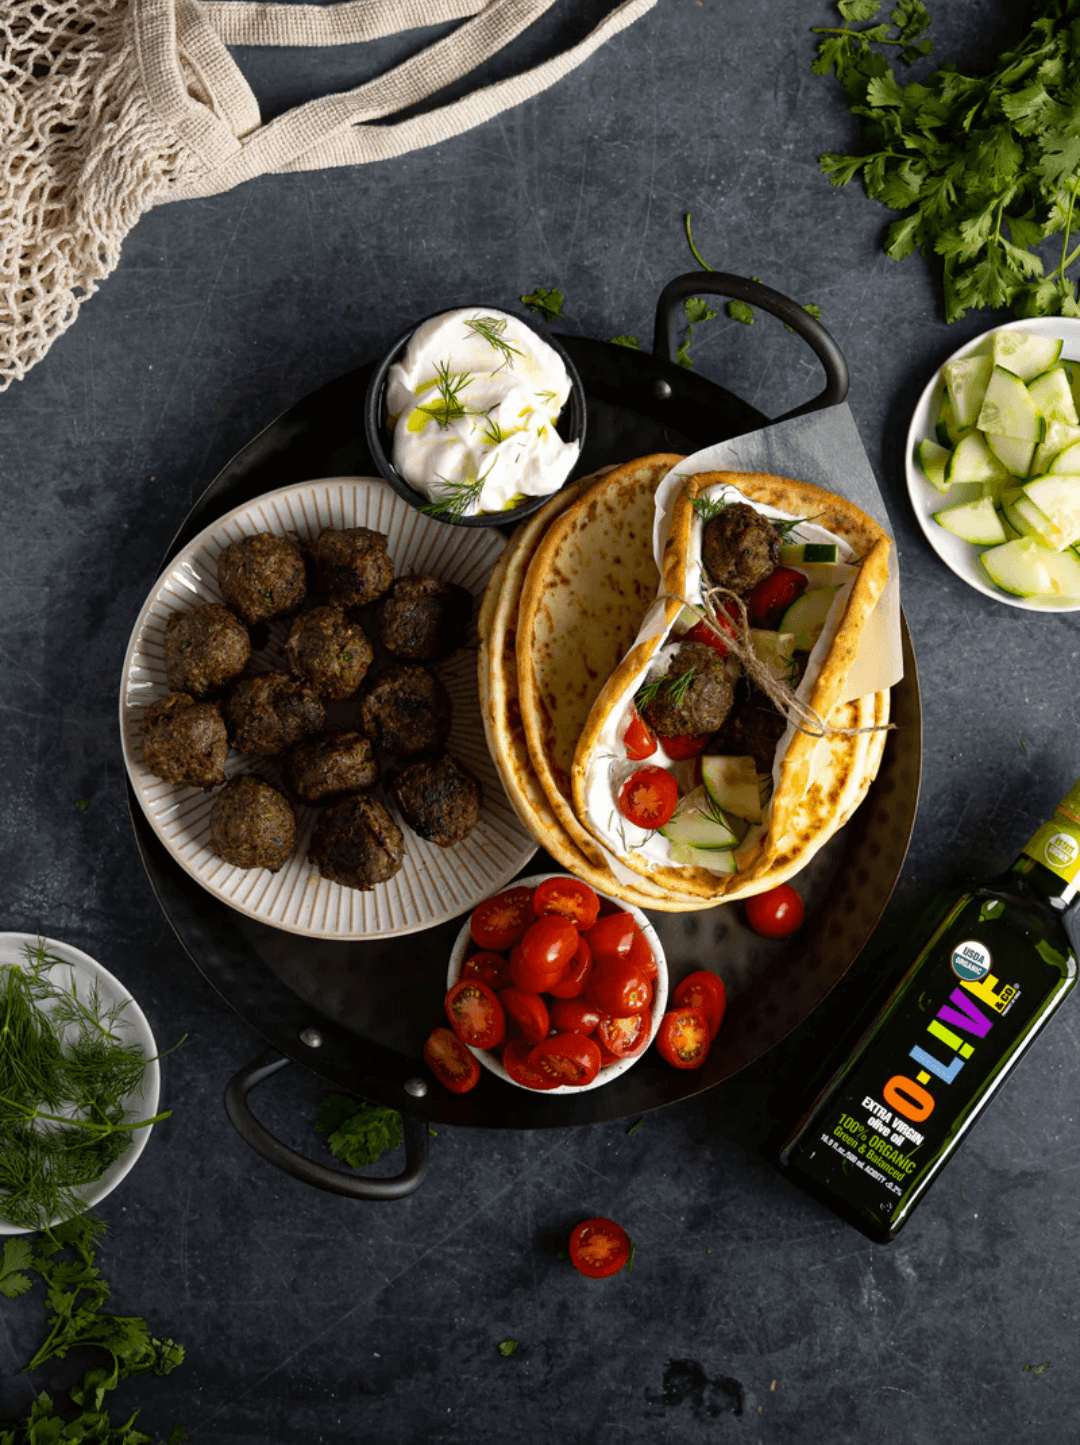 Bandeja negra con albóndigas mediterráneas, queso, tomates cherrys, pepinos cortados y pitas. Todo junto a una botella de 500ml de aceite de oliva O-Live & Co.